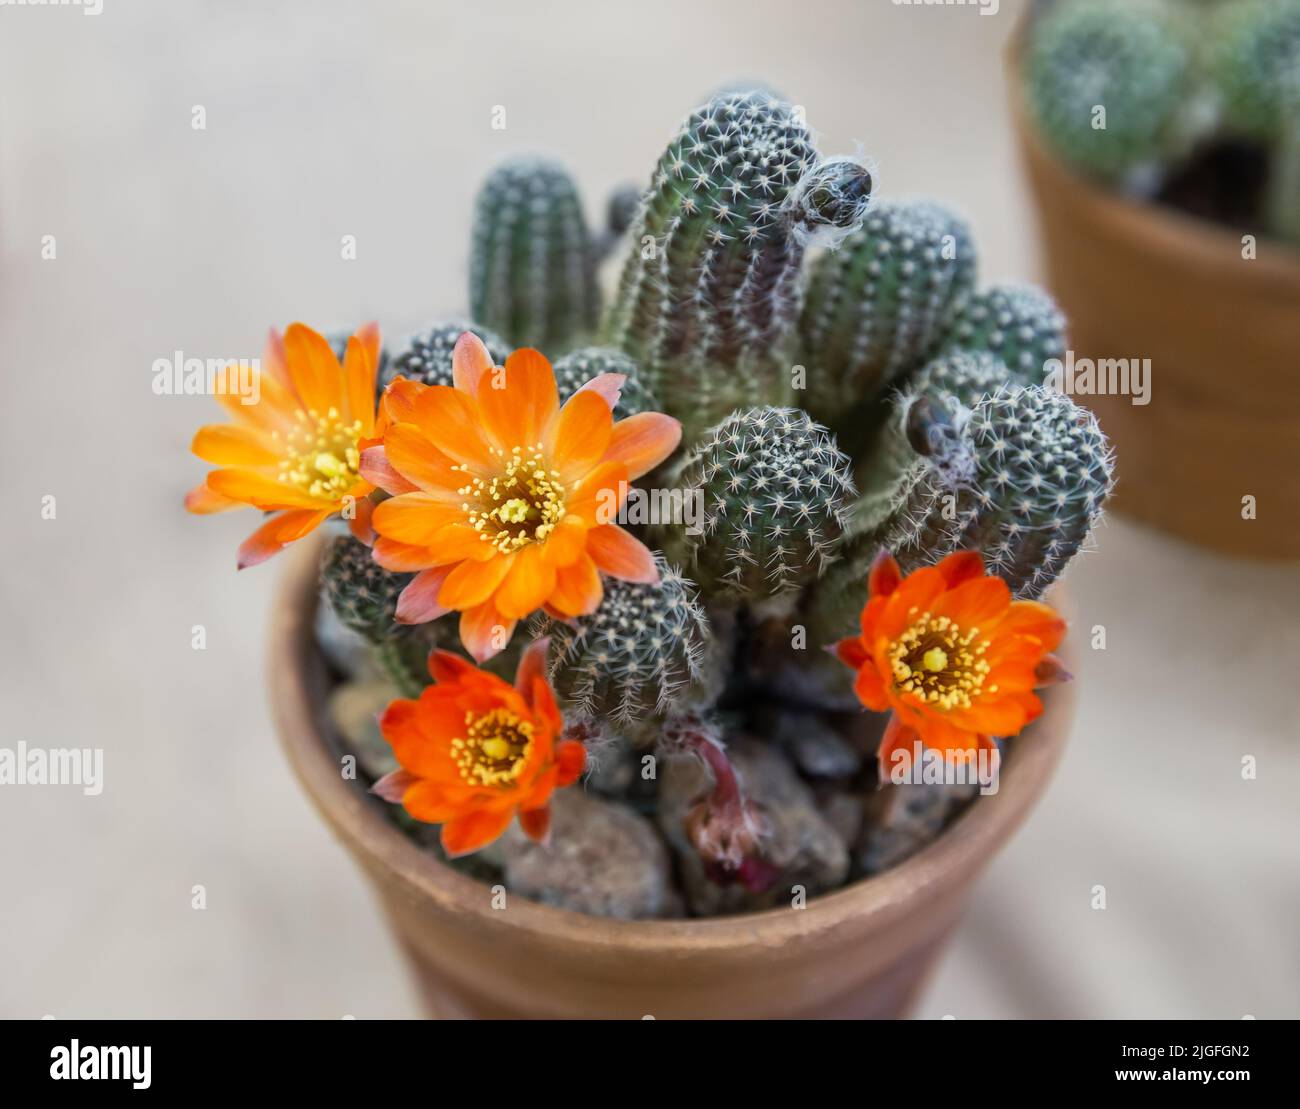 El cactus Echinopsis florece flores de color naranja en una maceta Foto de stock